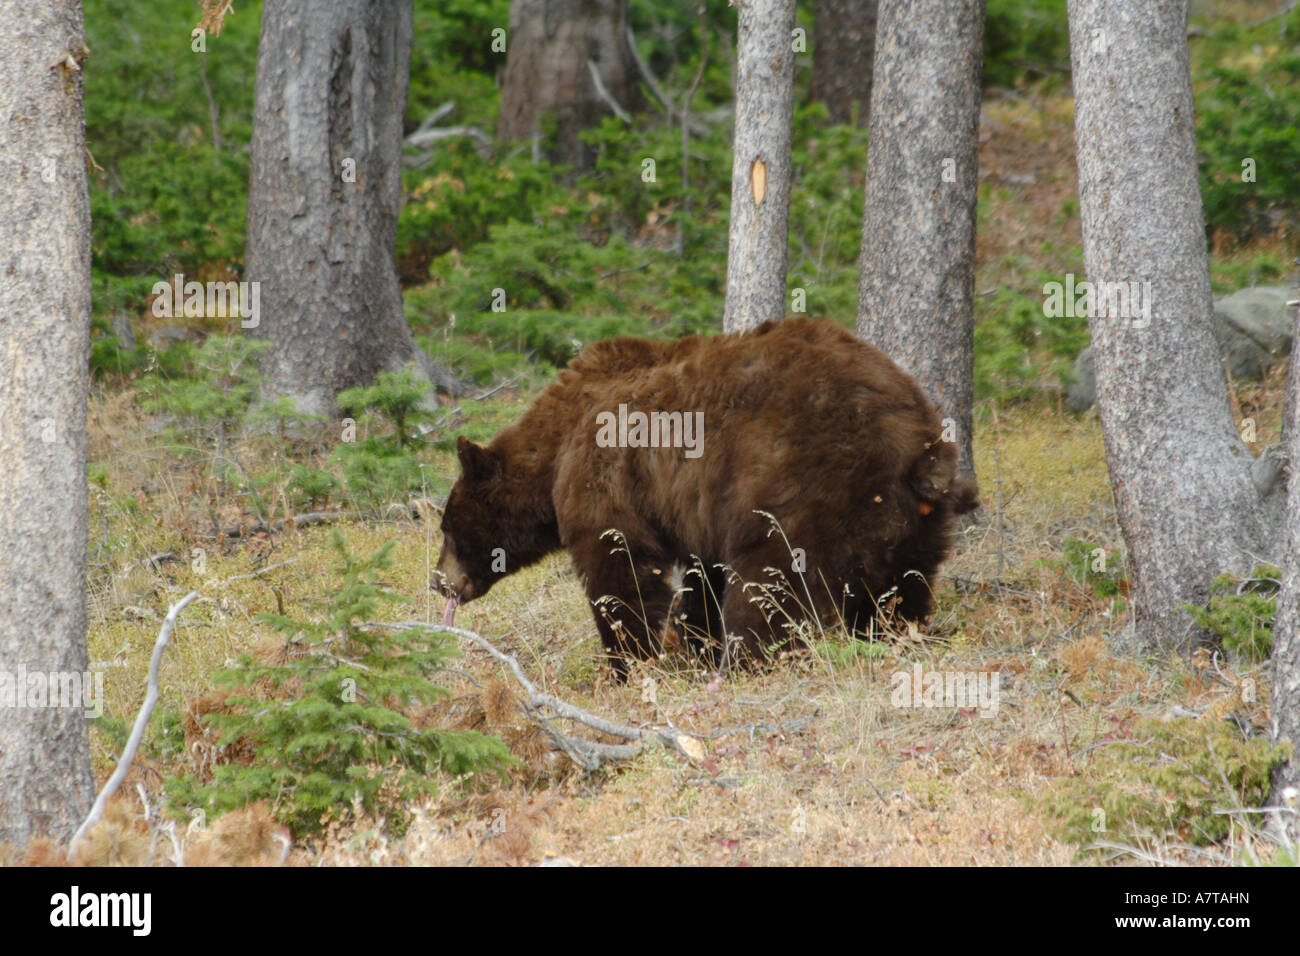 Rusty" der Bär auf die Toilette in den Wald gehen Stockfotografie - Alamy